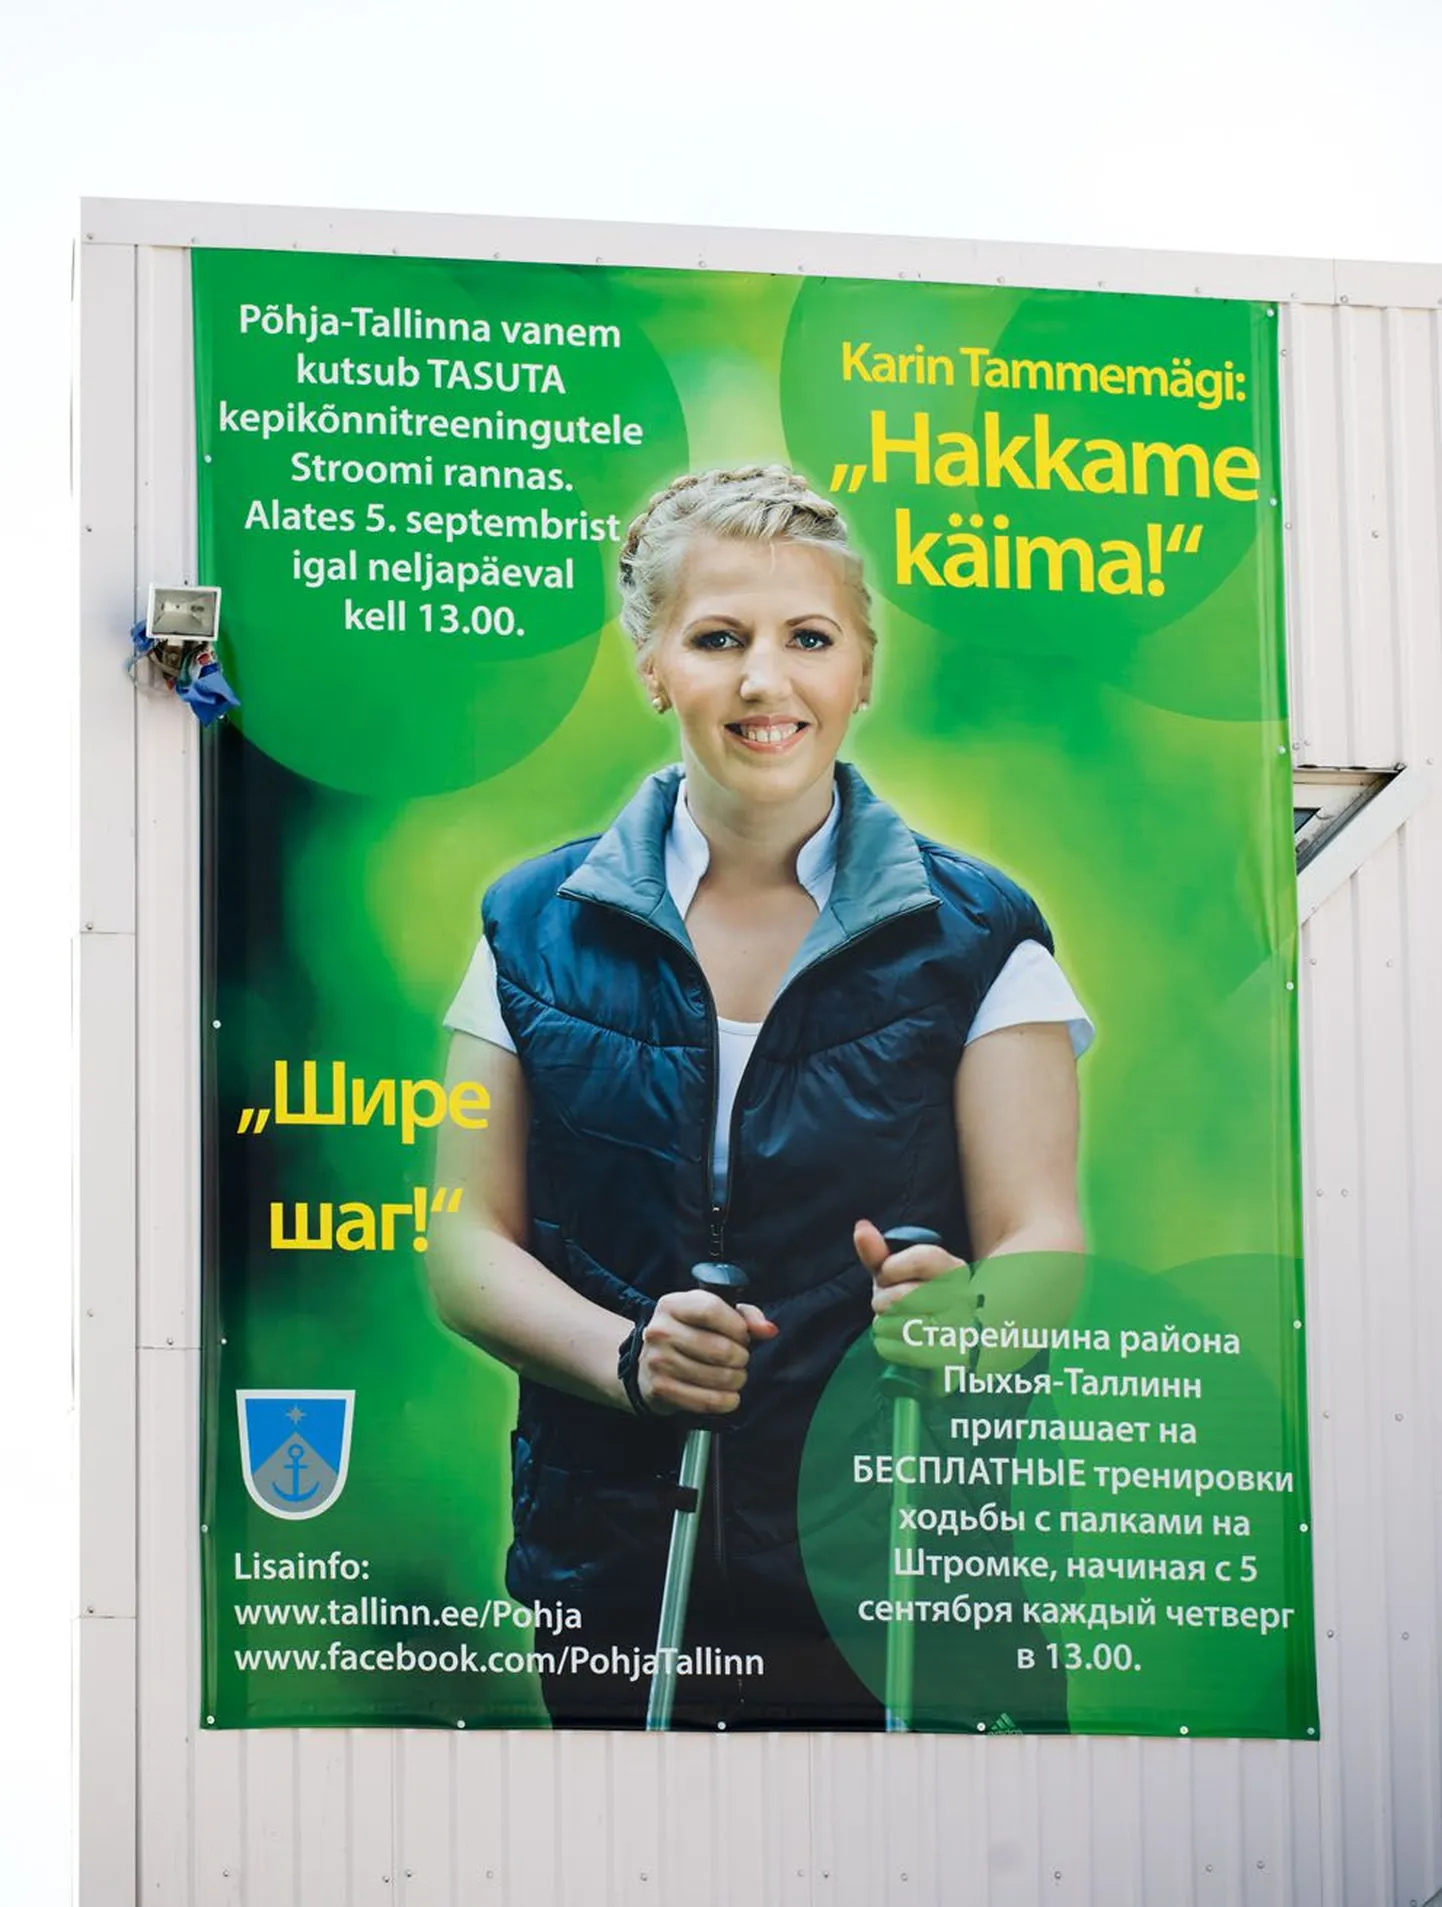 Karin Tammemäe kepikõnnikampaania reklaam.